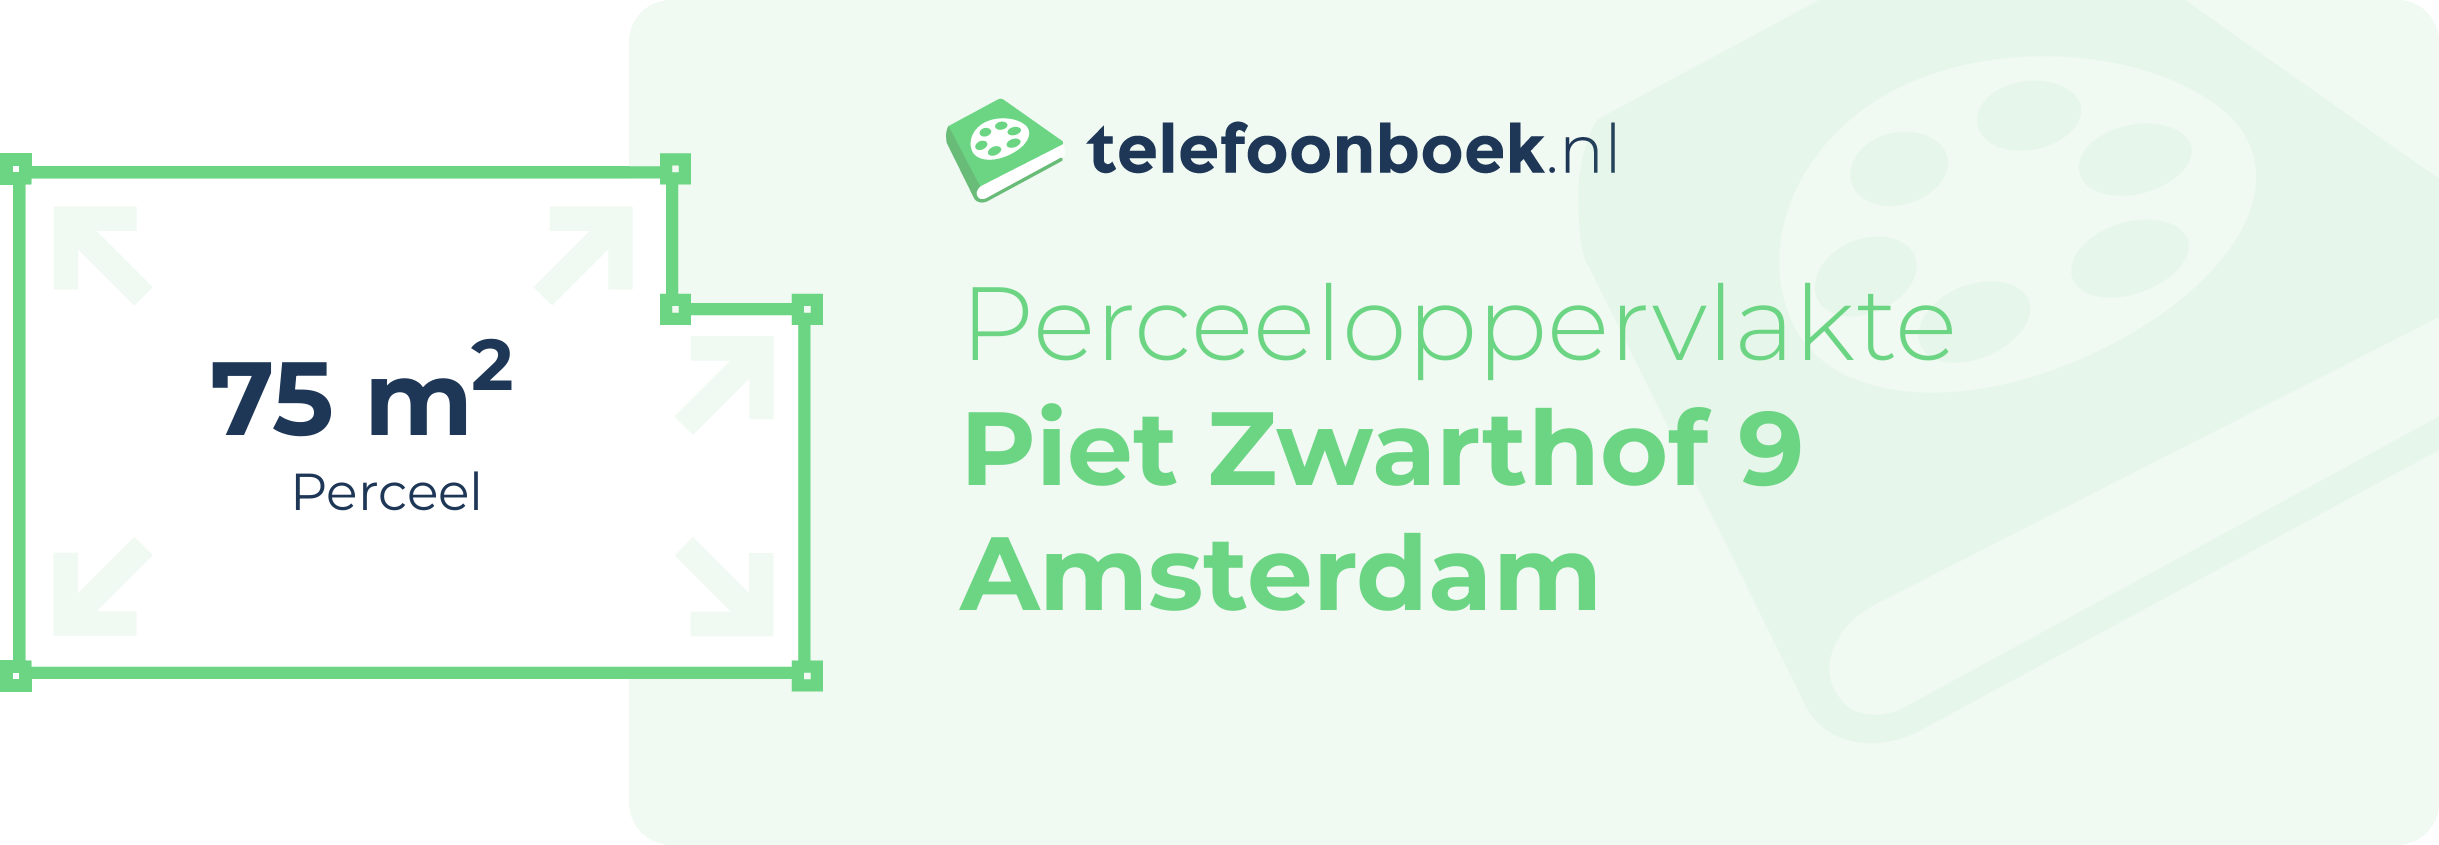 Perceeloppervlakte Piet Zwarthof 9 Amsterdam